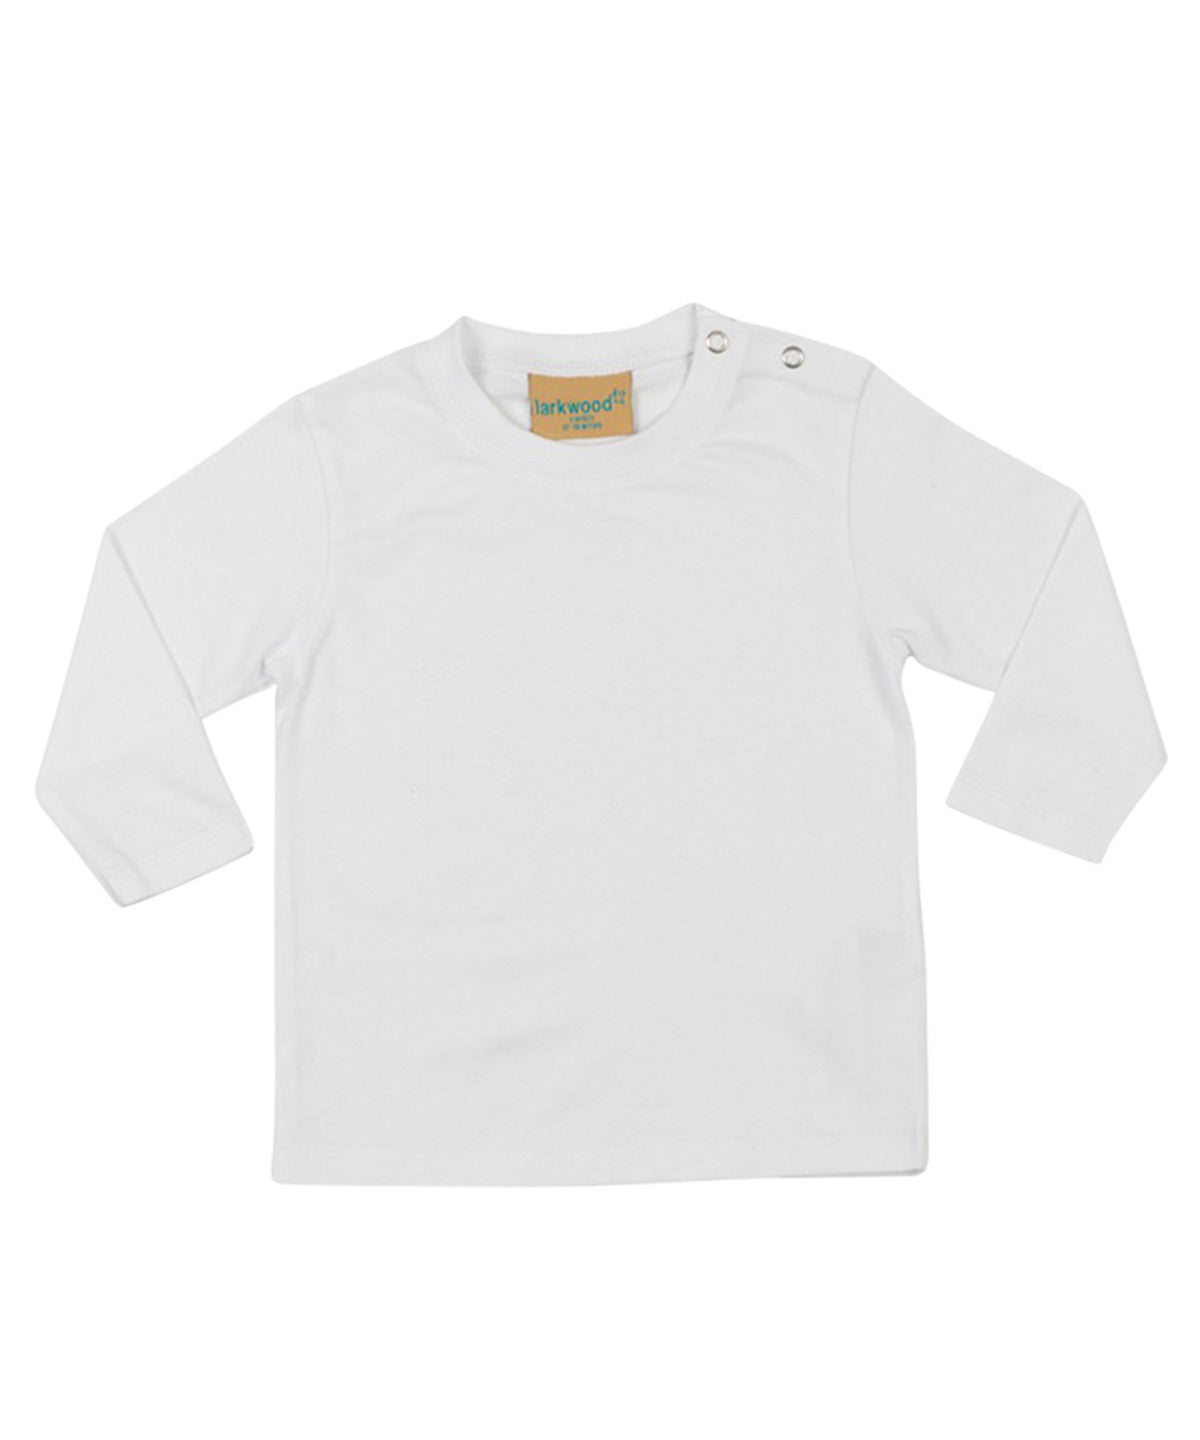 Stuttermabolir - Long-sleeved T-shirt